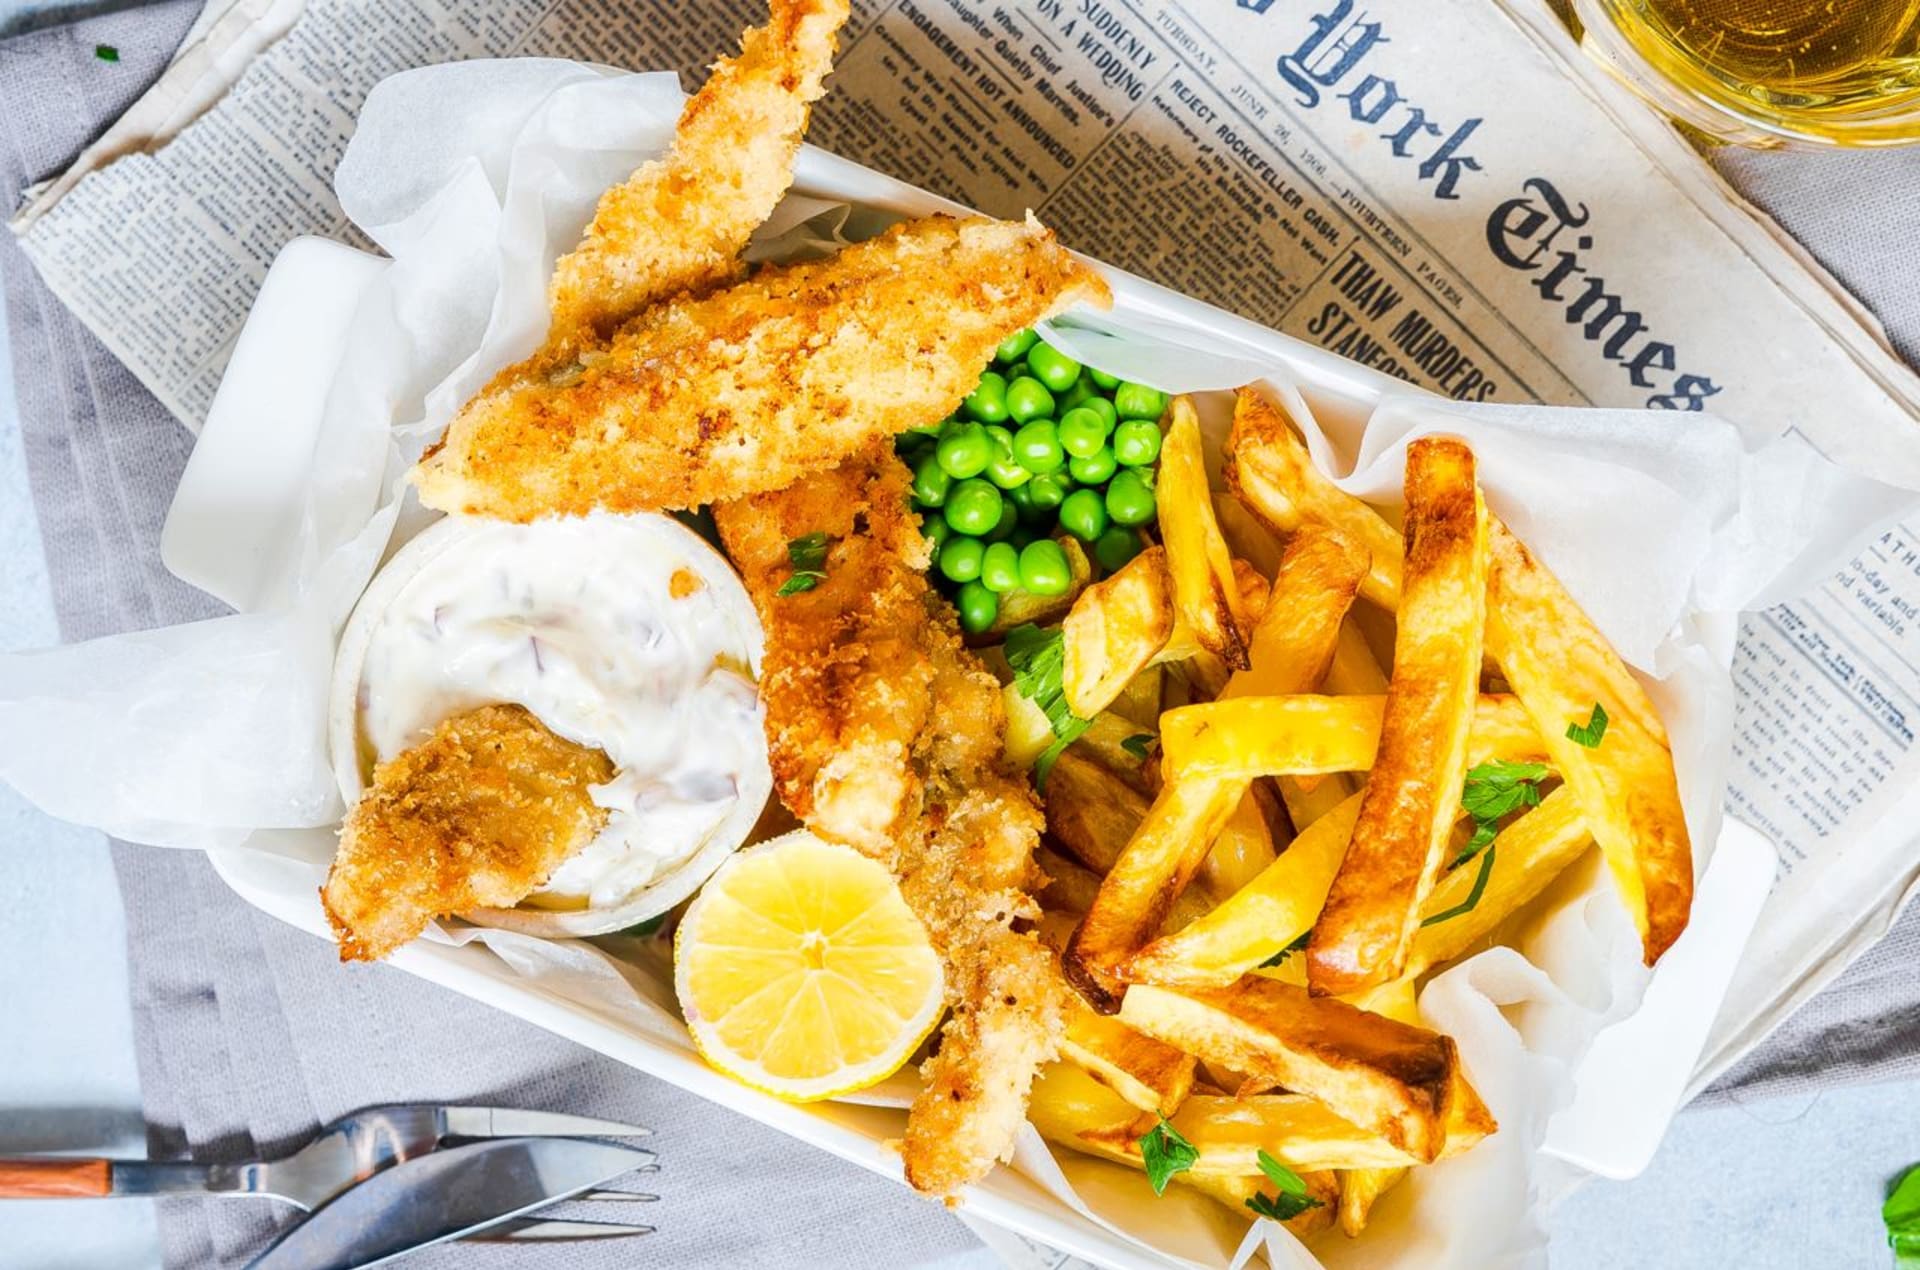 Fish & chips: treska v křupavé strouhance a hranolky z trouby